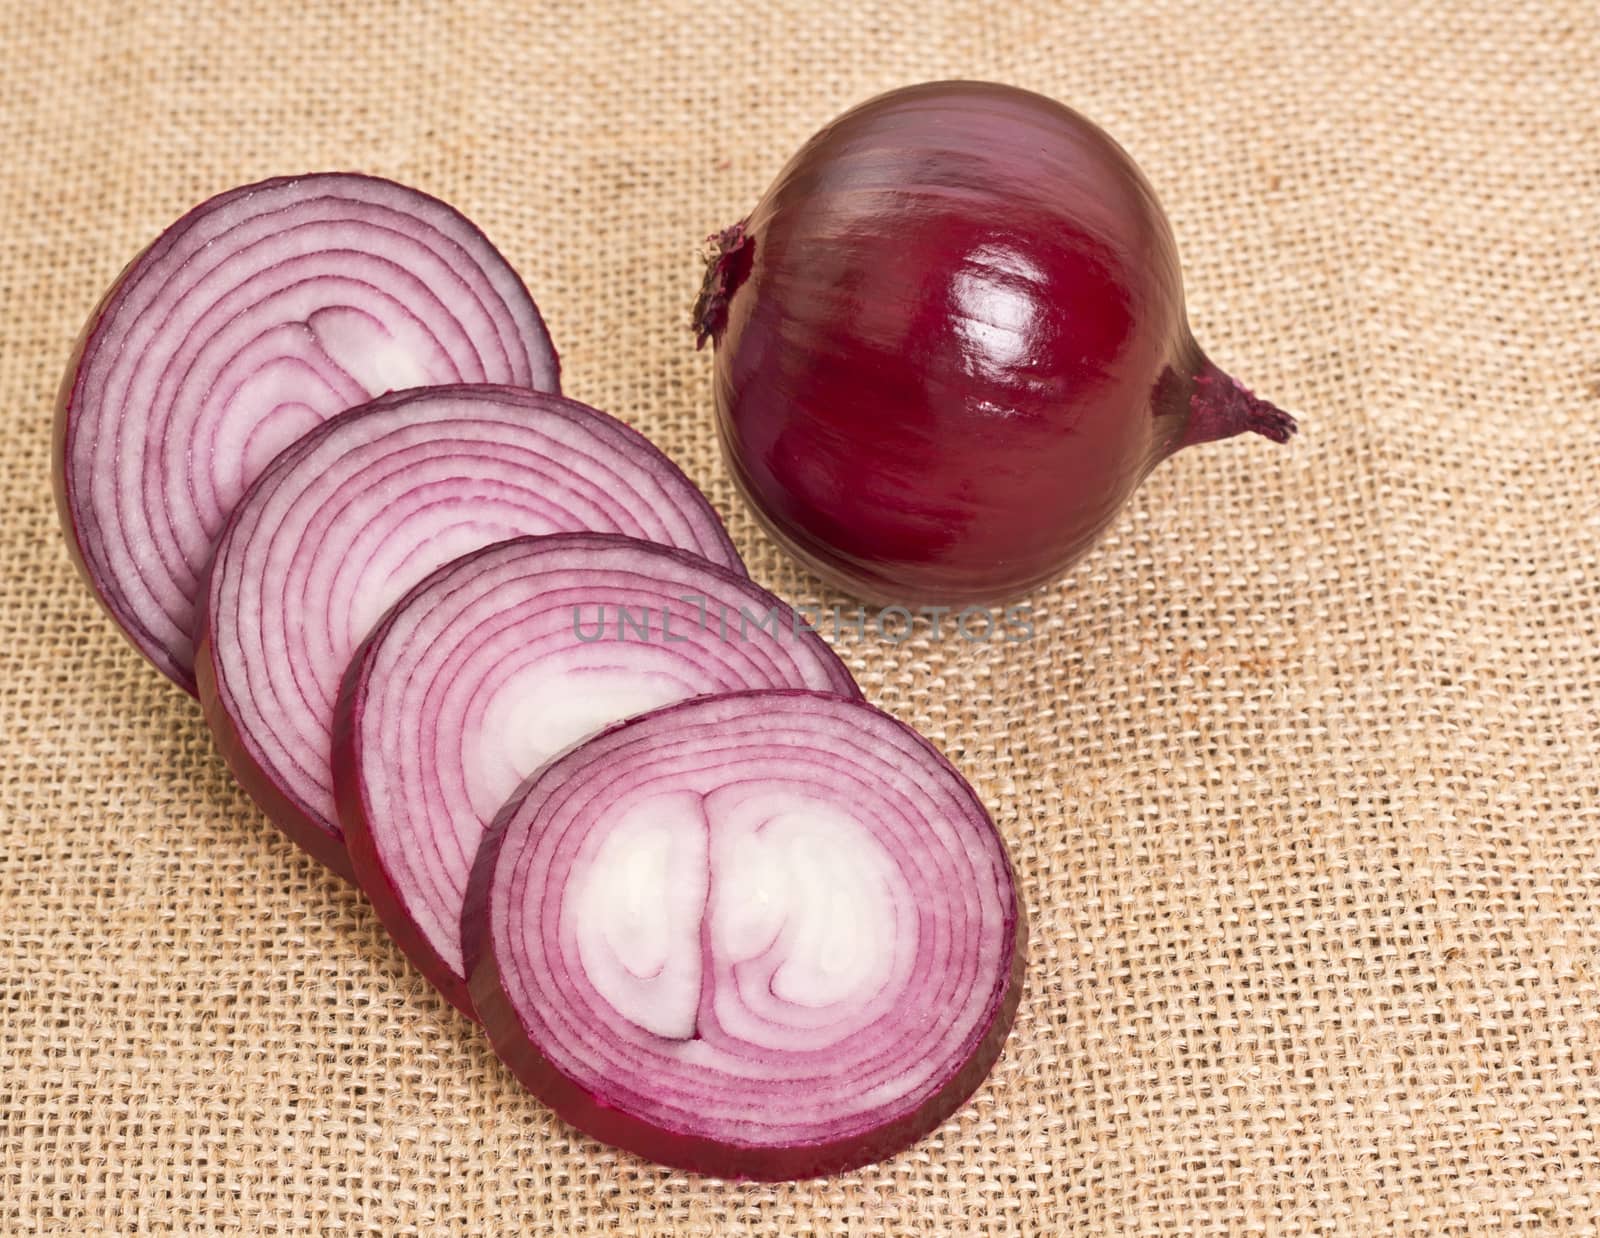 fresh onion on sacking by aziatik13